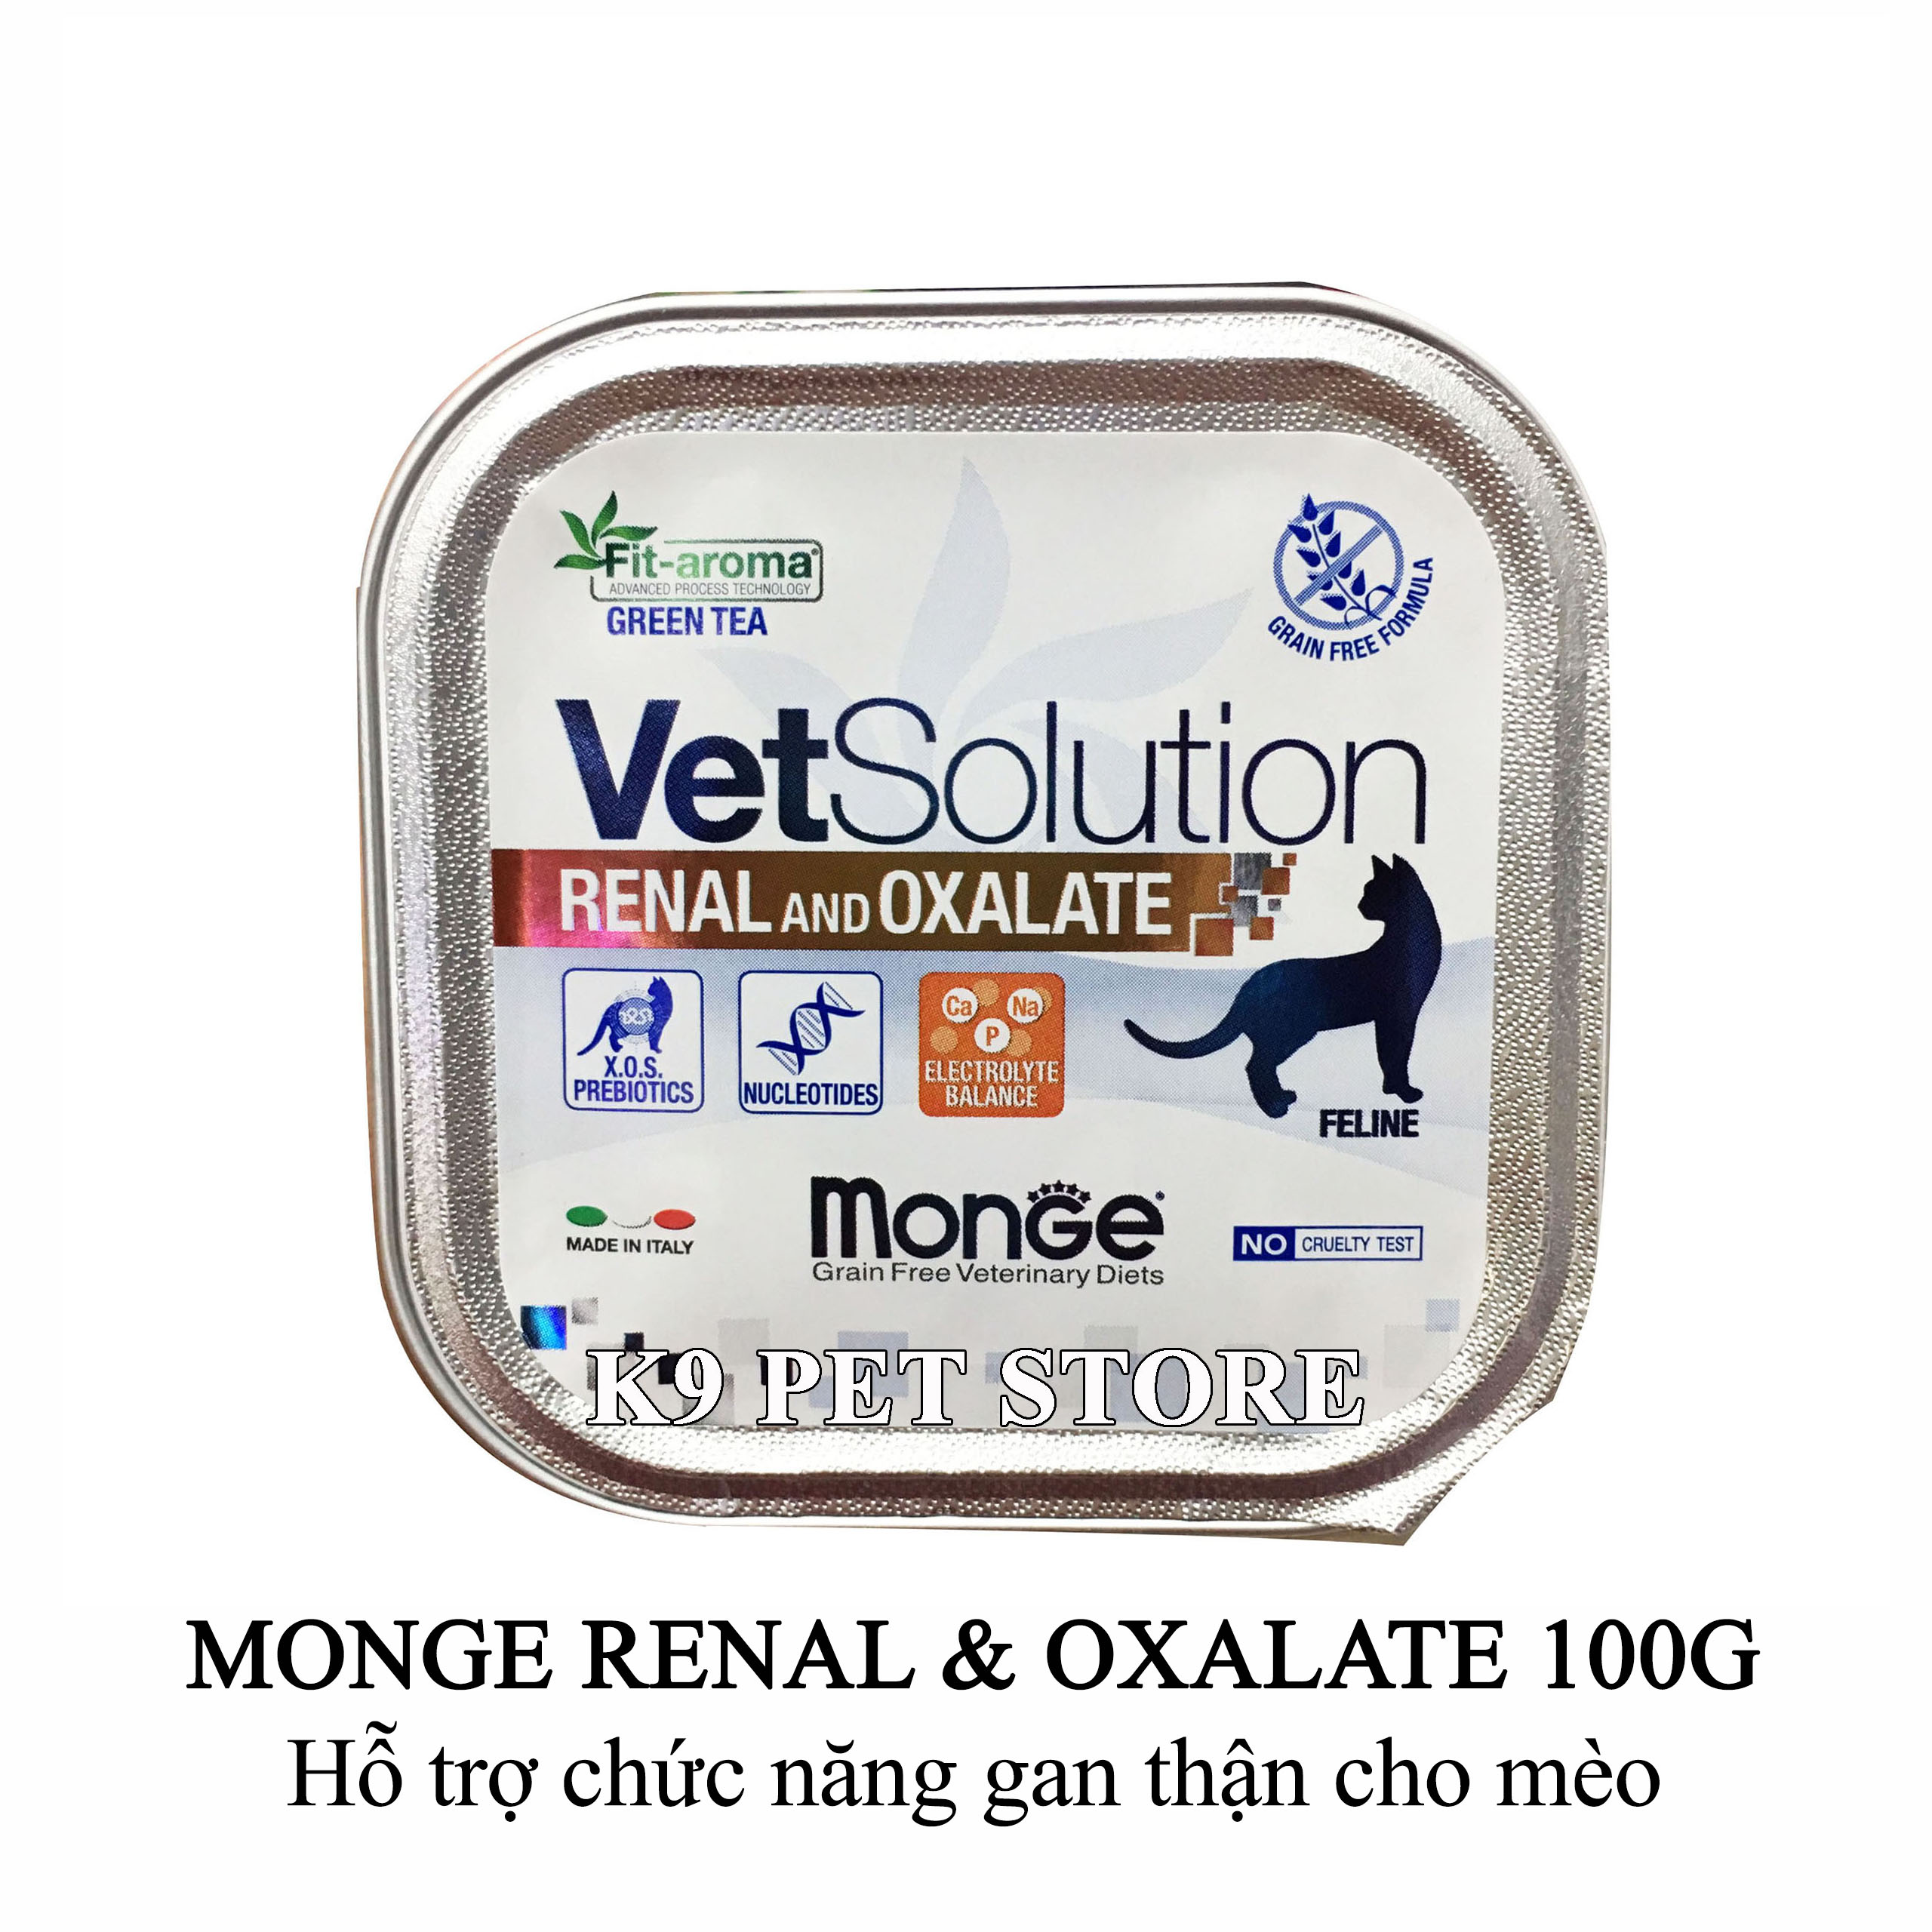 Pate Monge Renal and Oxalate 100g - Hỗ trợ chức năng gan thận cho mèo